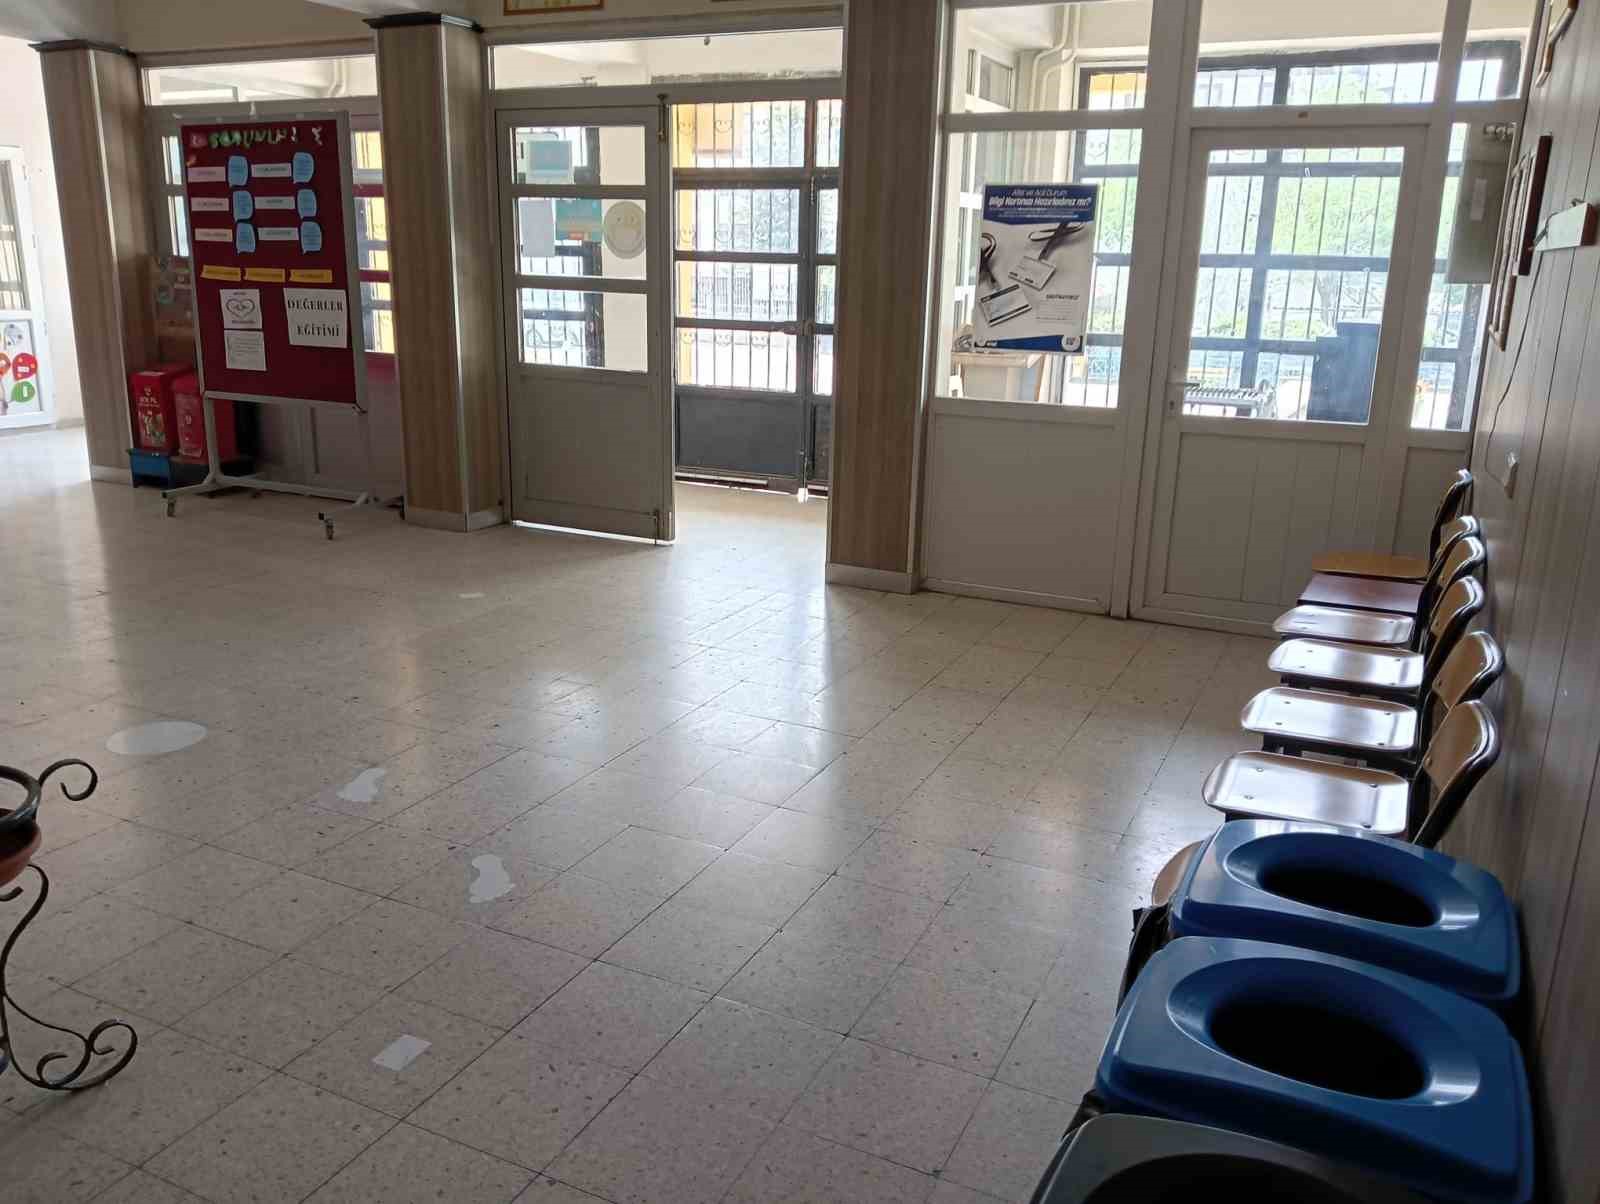 Öğrencisinin bıçaklı saldırısına uğrayan öğretmenin meslektaşı: “Öğrenci okula bıçak getirip saklamış”
